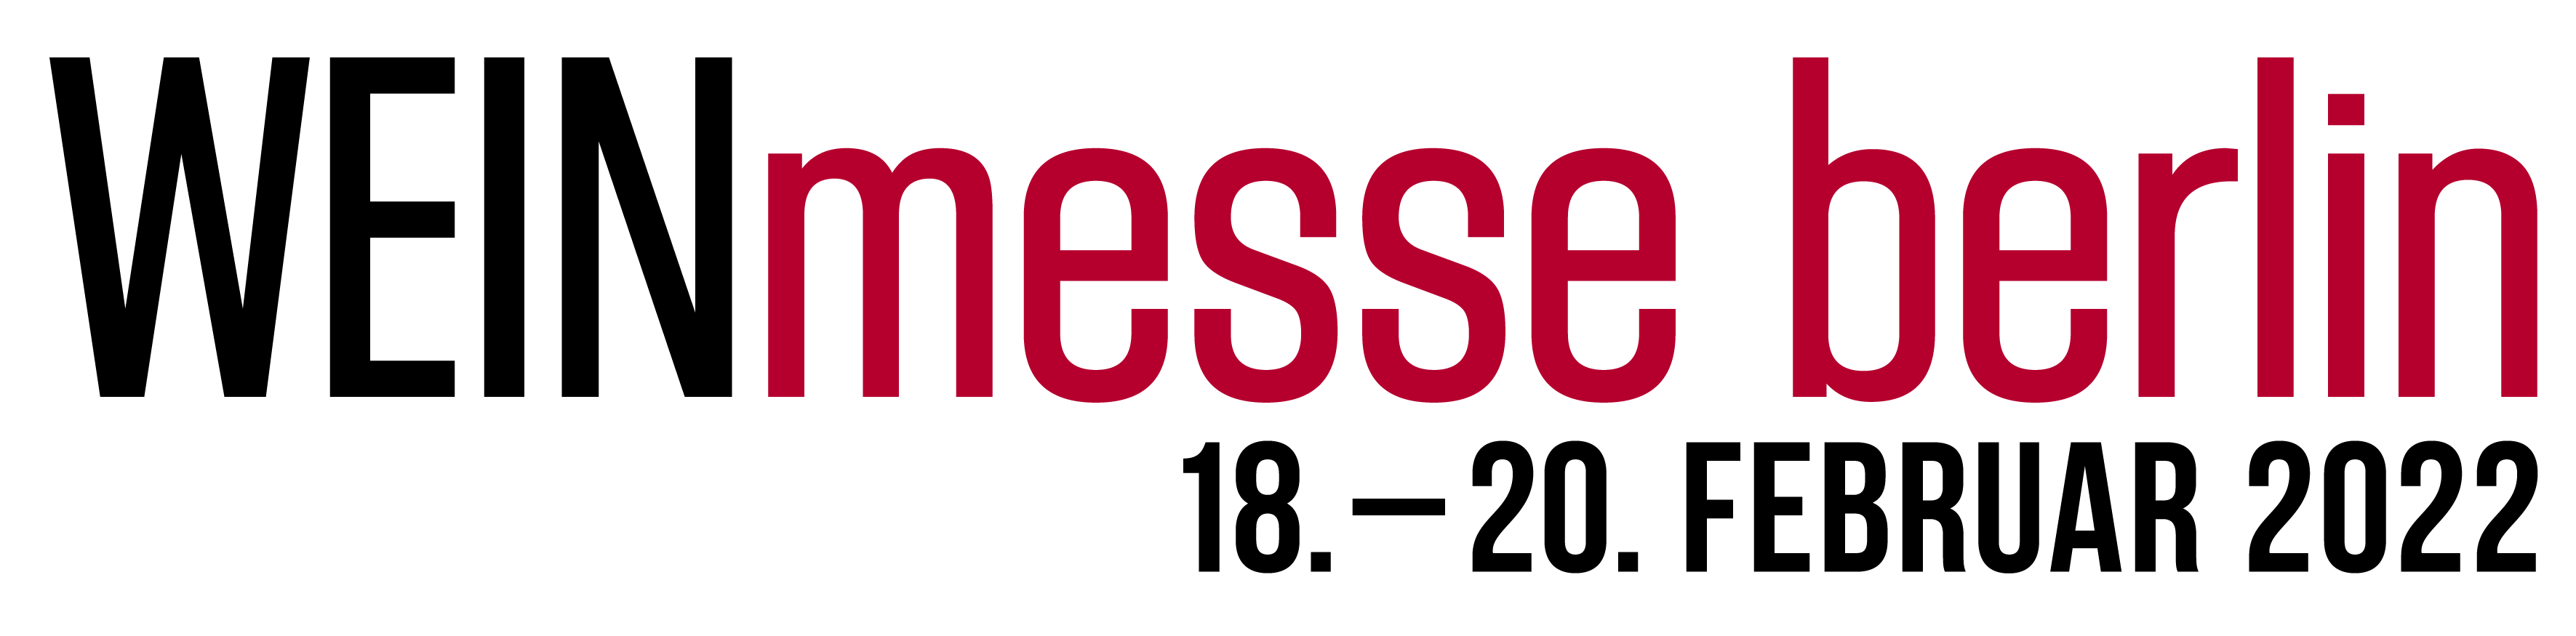 Weinmesse_Berlin_2022